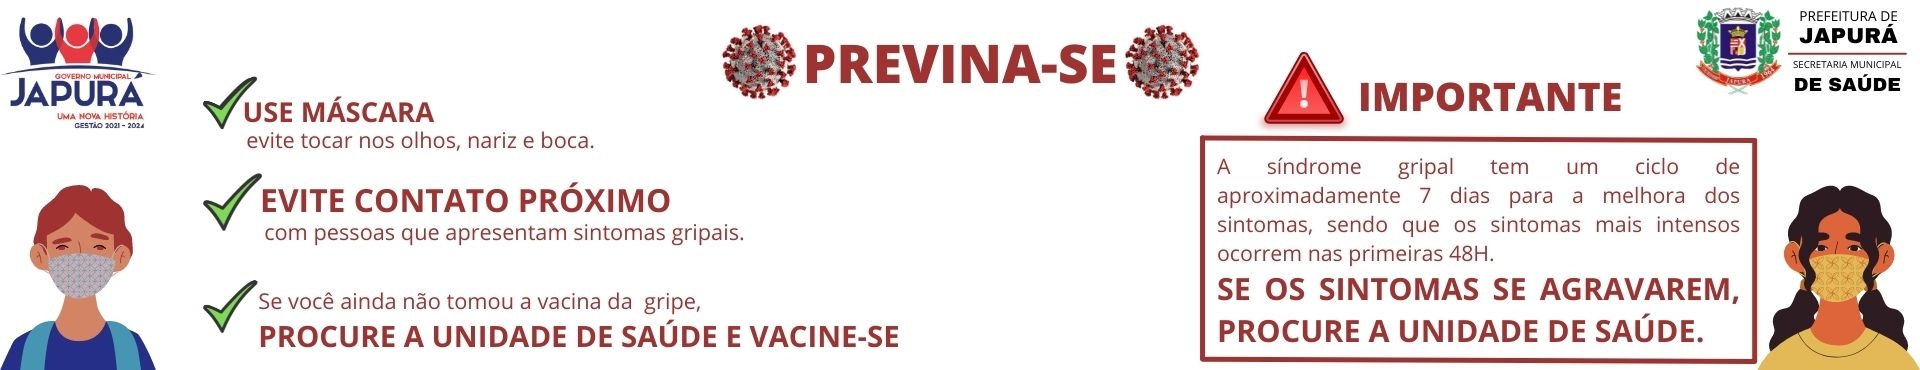 PREVINA-SE